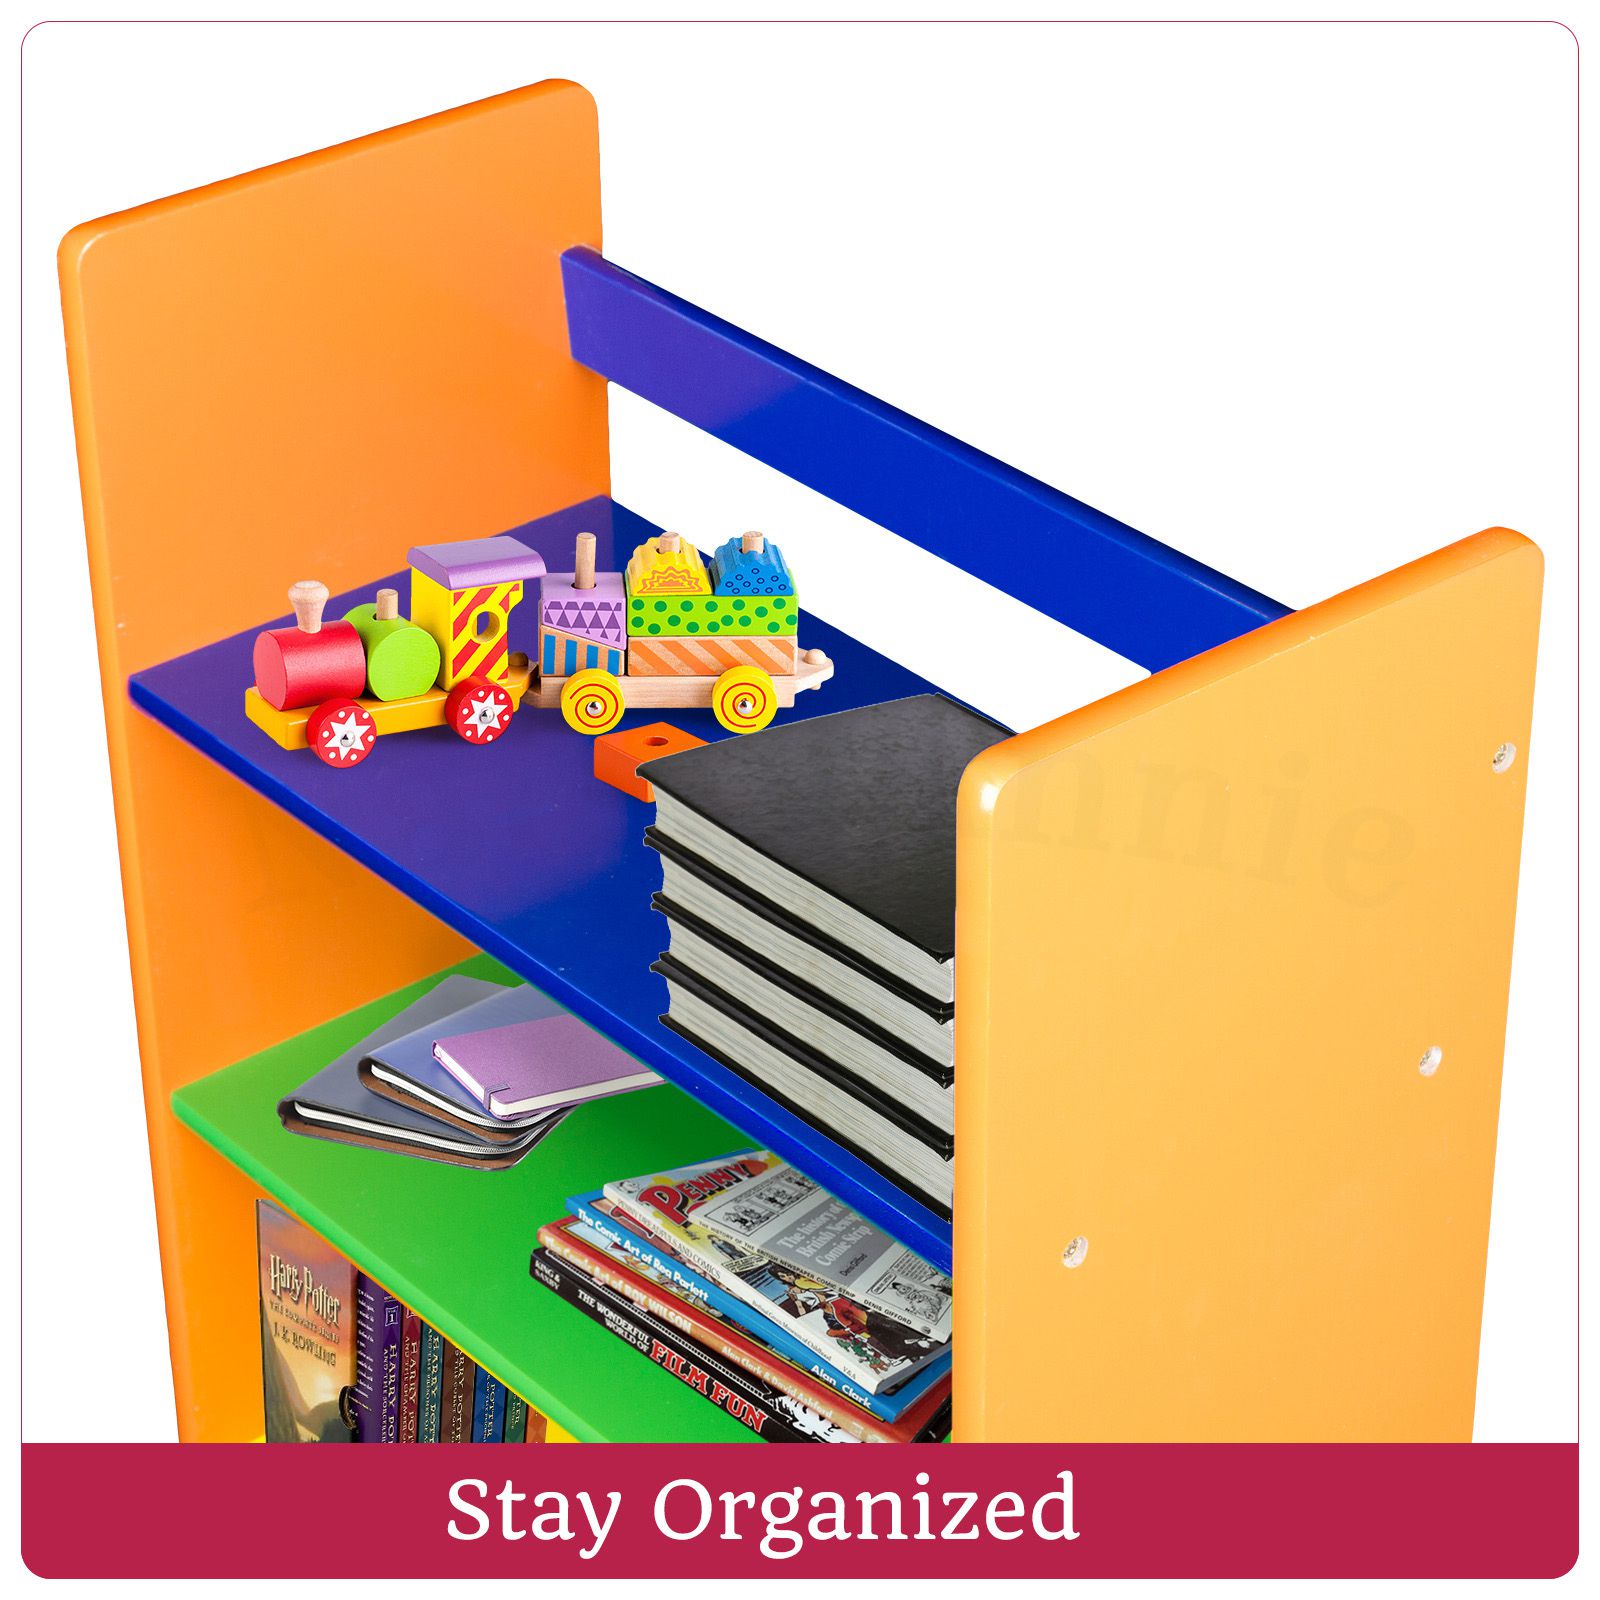 Childrens Wooden Book Shelf Multicoloured Kids Shelf Storage